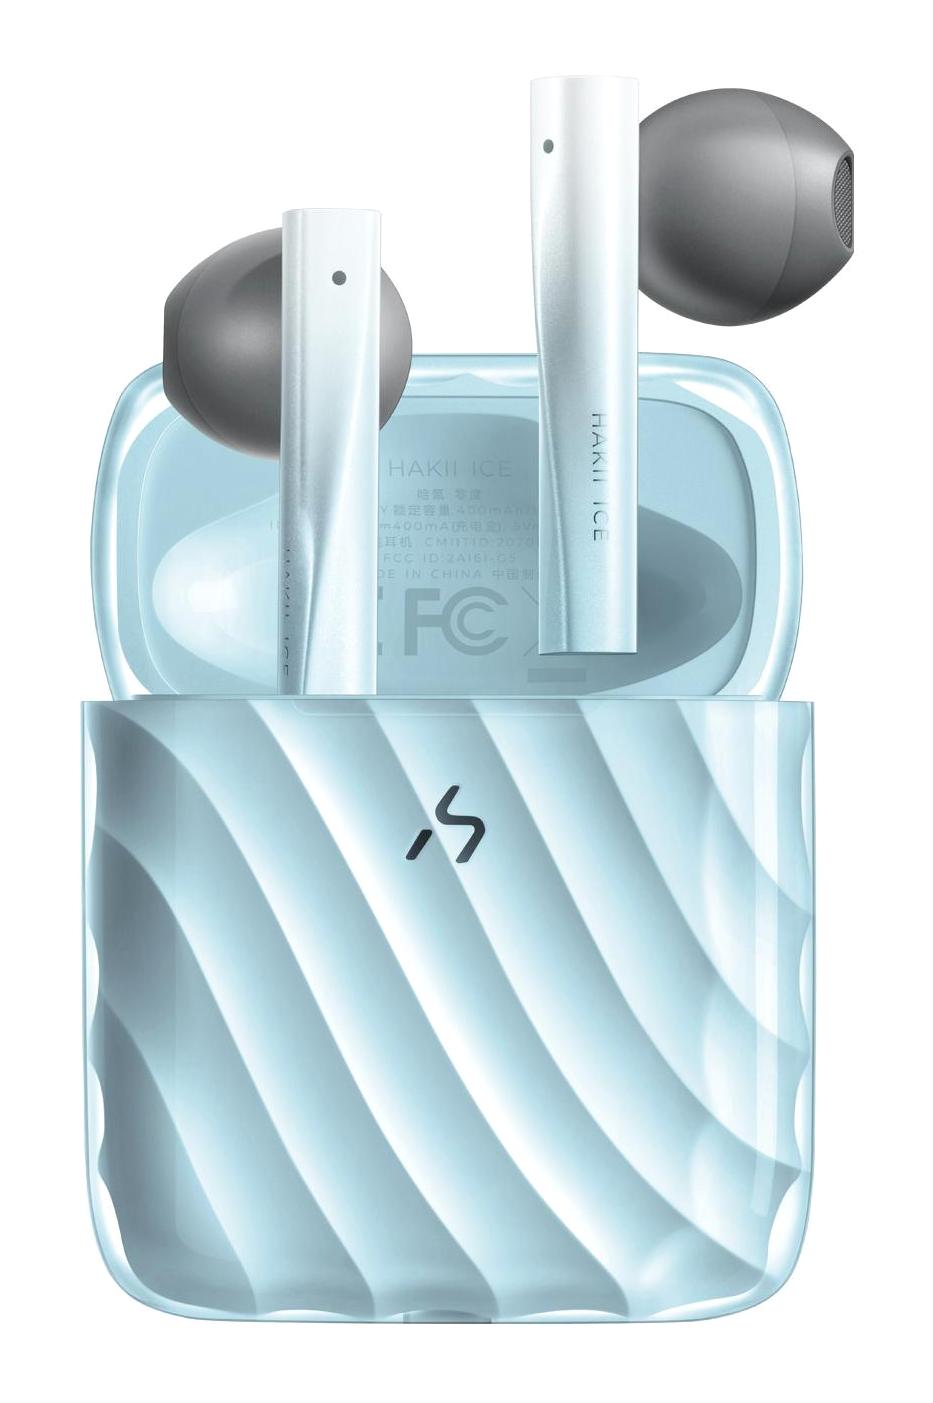 Hakii Ice 5.2 Gürültü Önleyici Kulak İçi Bluetooth Kulaklık Mavi